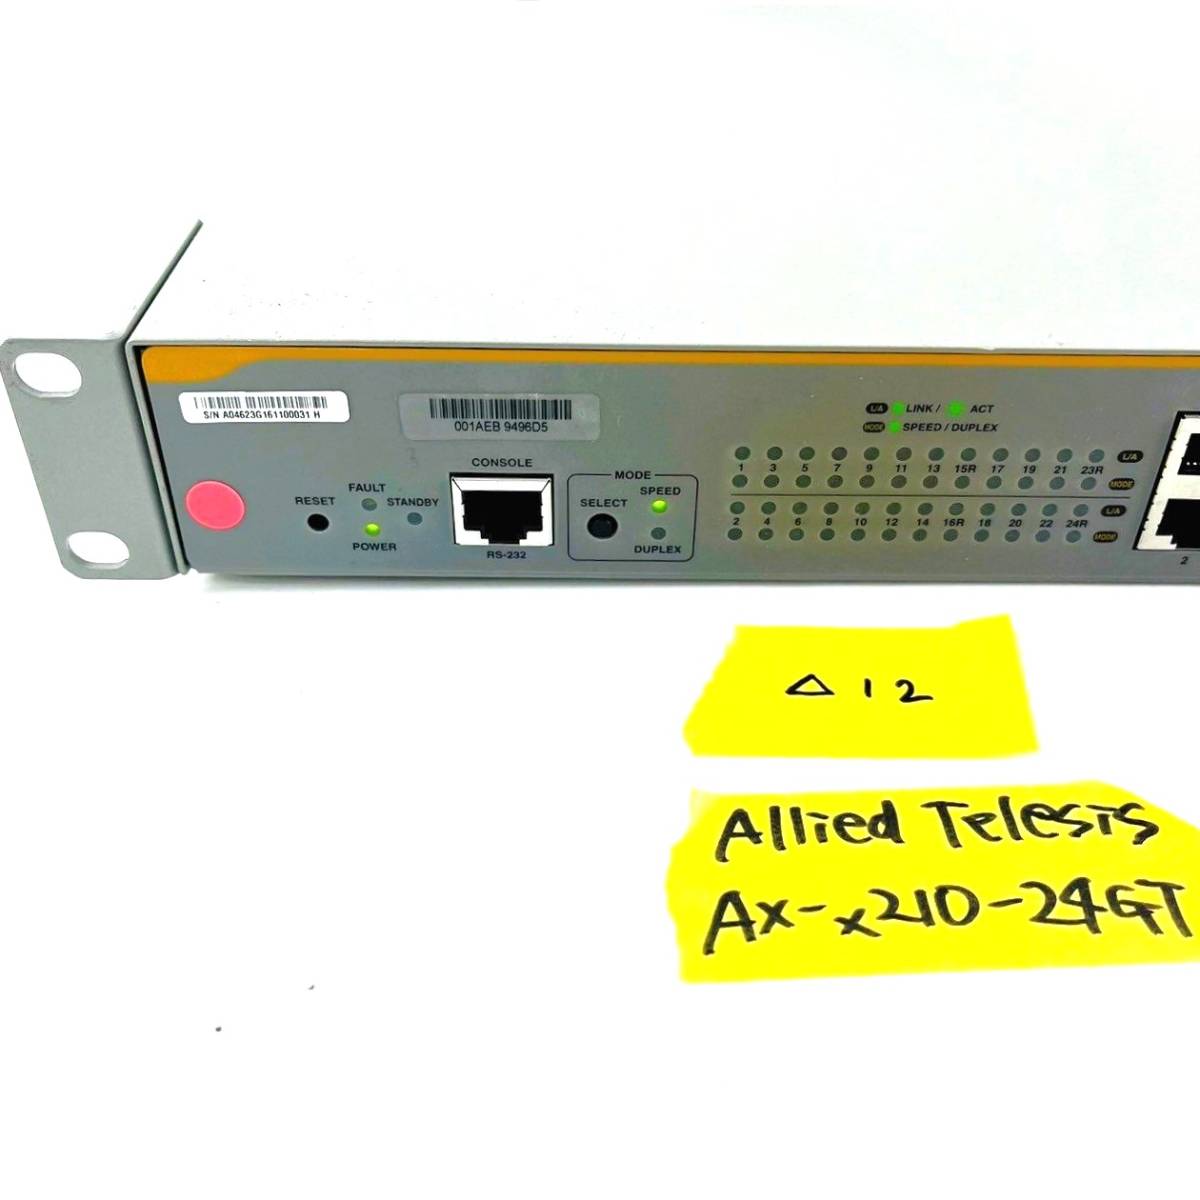 △12【通電OK】 Allied Telesis AT-x210-24GT CentreCOM レイヤー2plus ギガビット インテリジェント スイッチ switch アライドテレシス_画像2